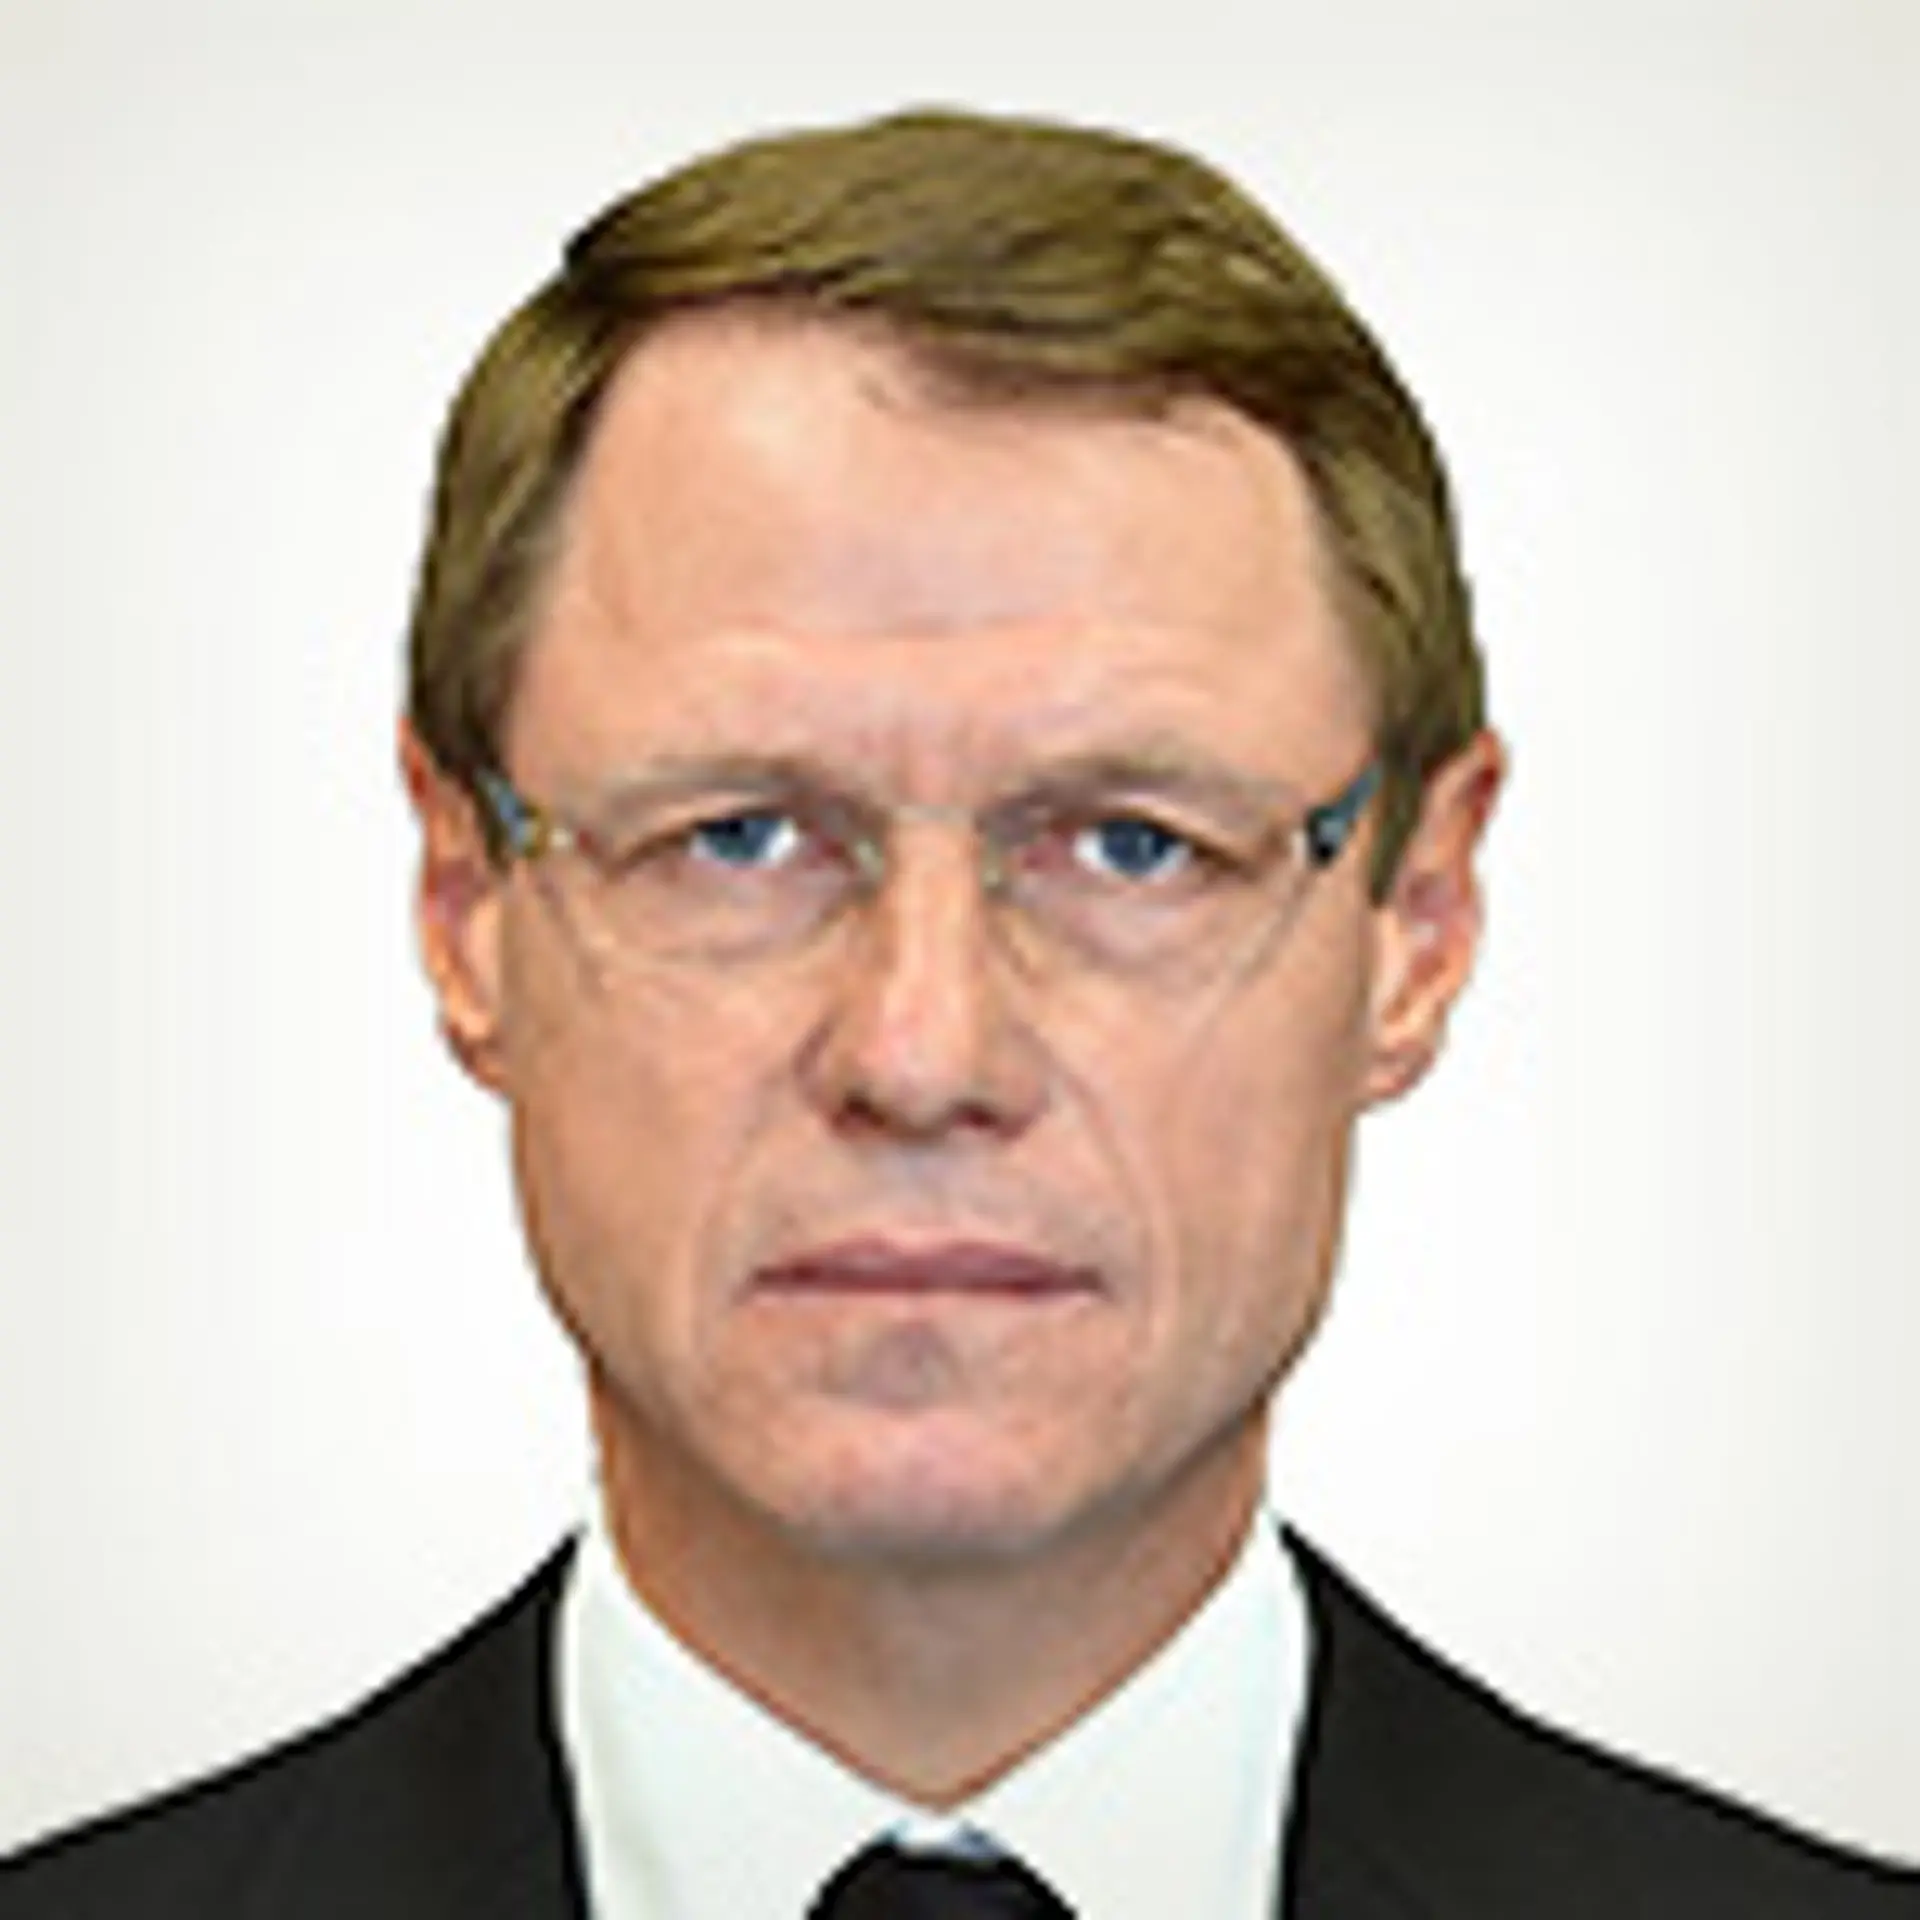 أوليغ كونونوف avatar